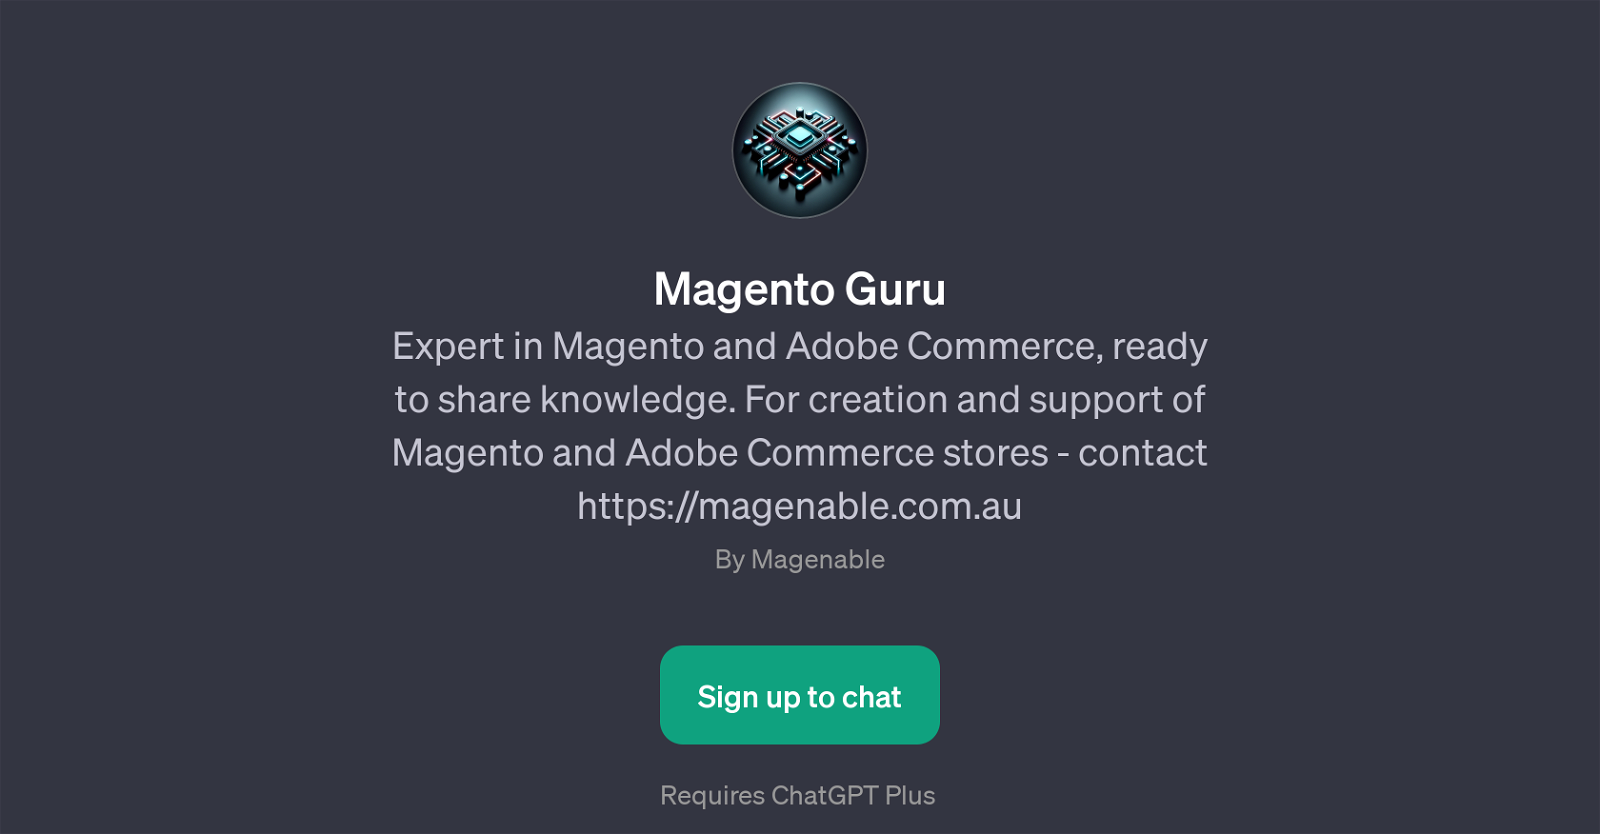 Magento Guru website